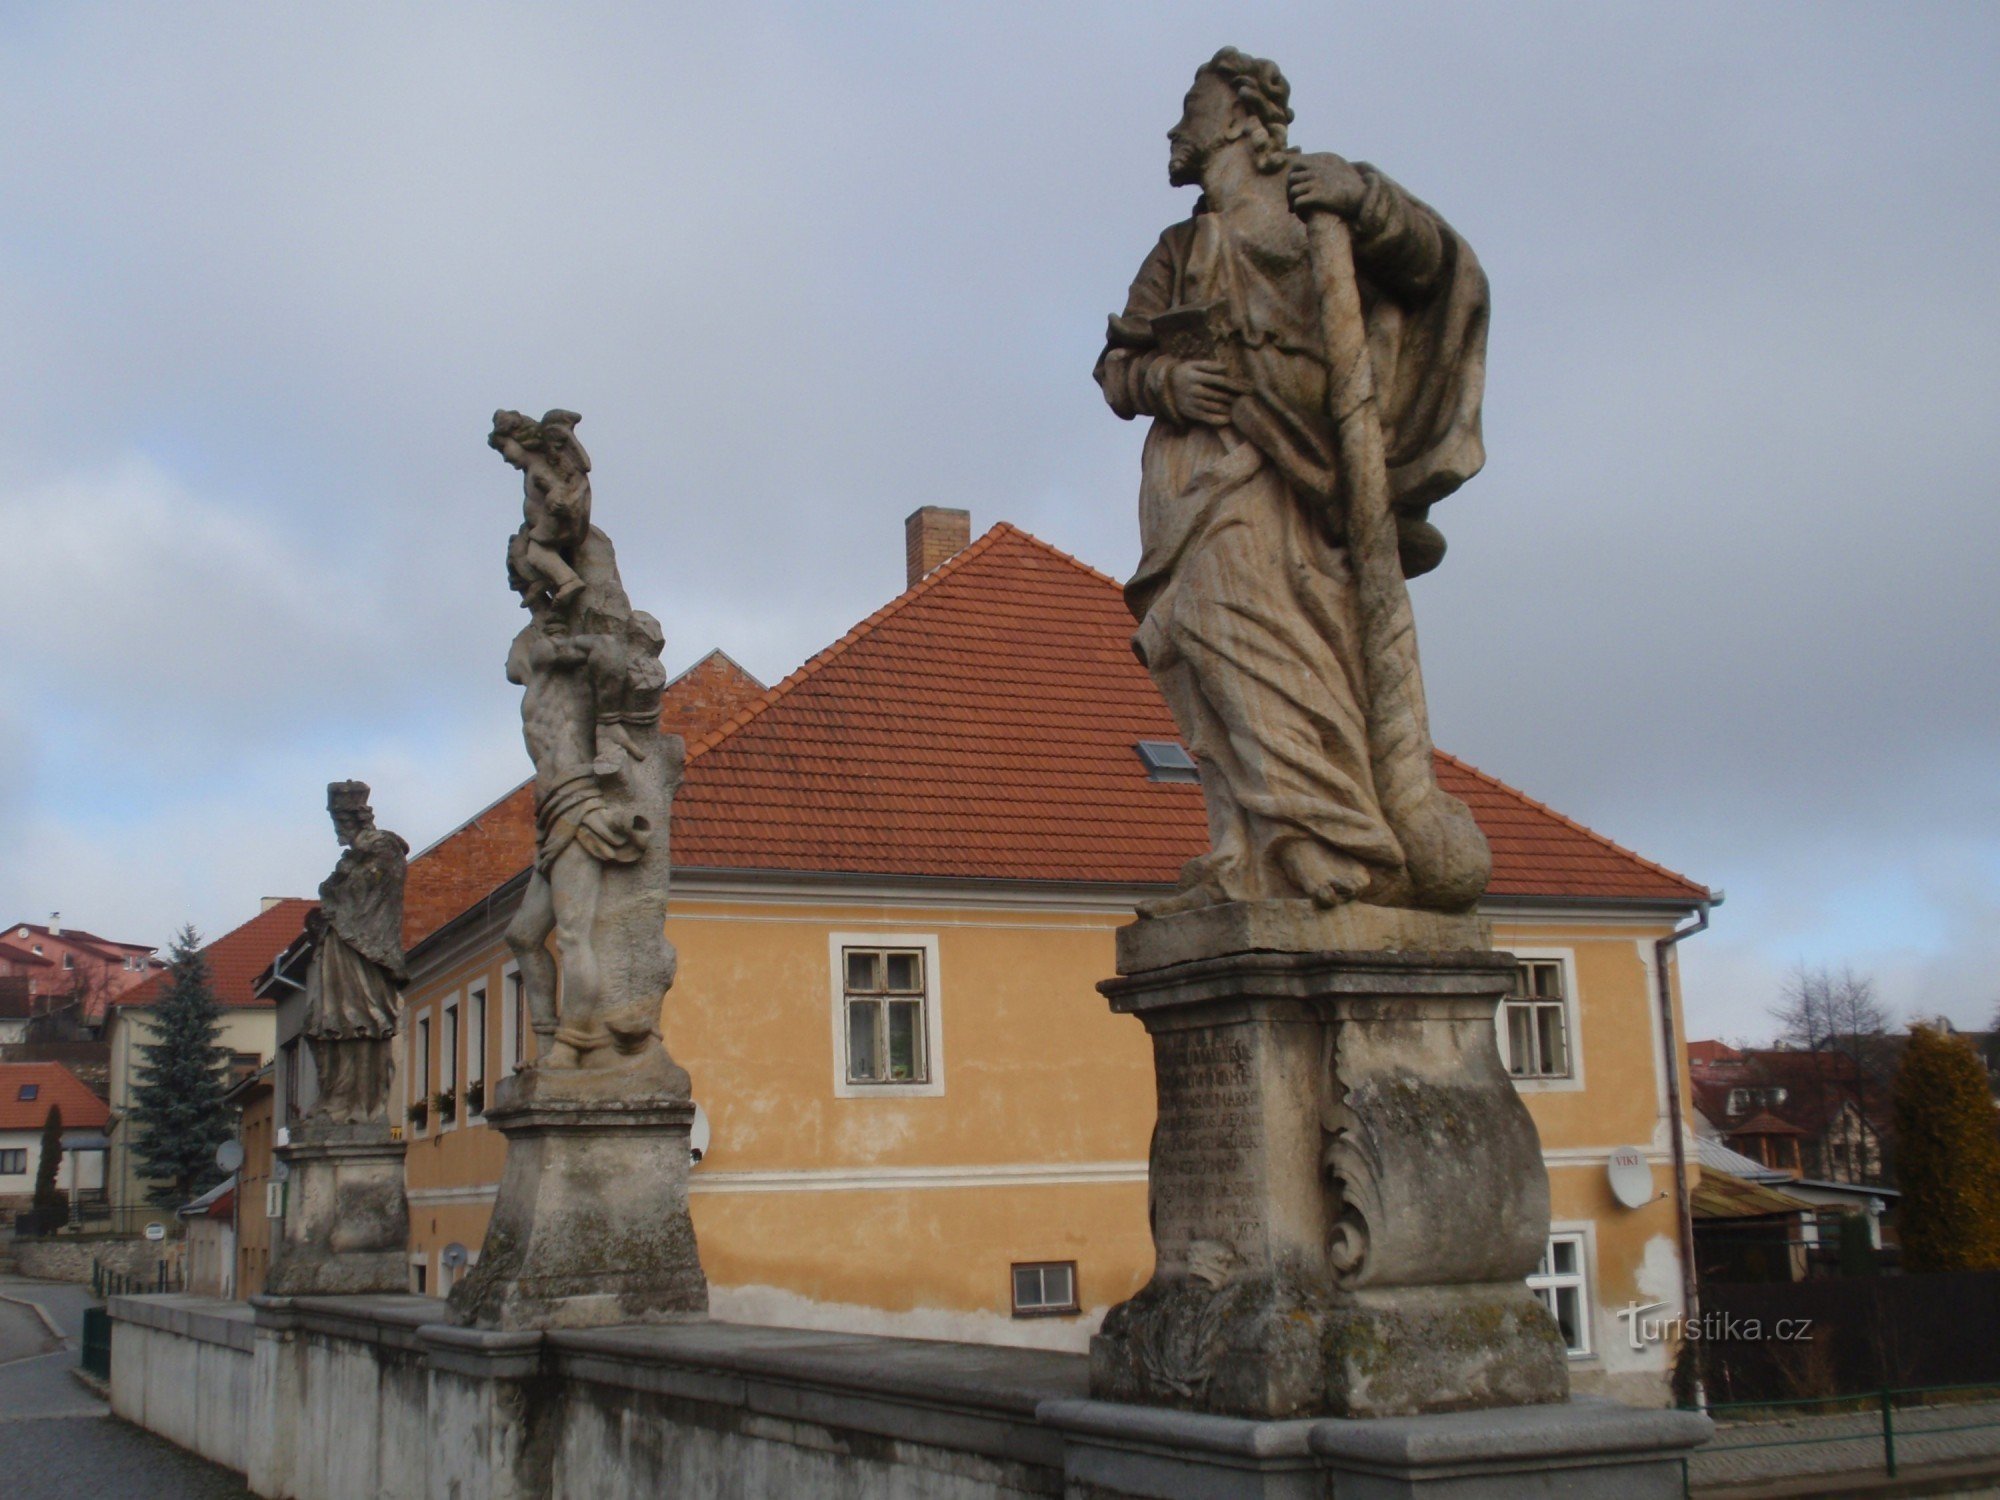 Decoración escultórica del puente debajo del castillo en Brtnice cerca de Jihlava